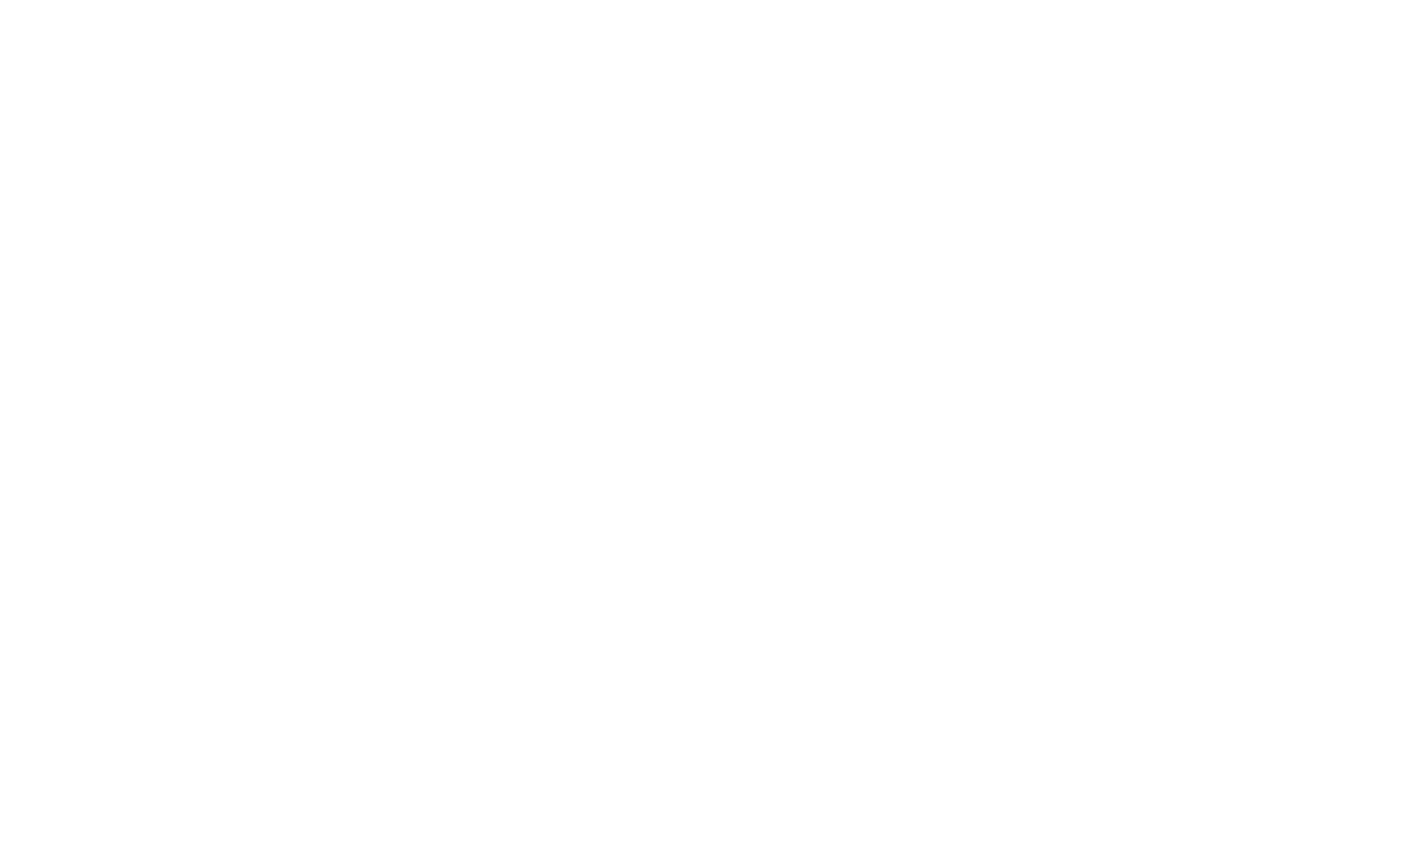 Ipsodeckso logo